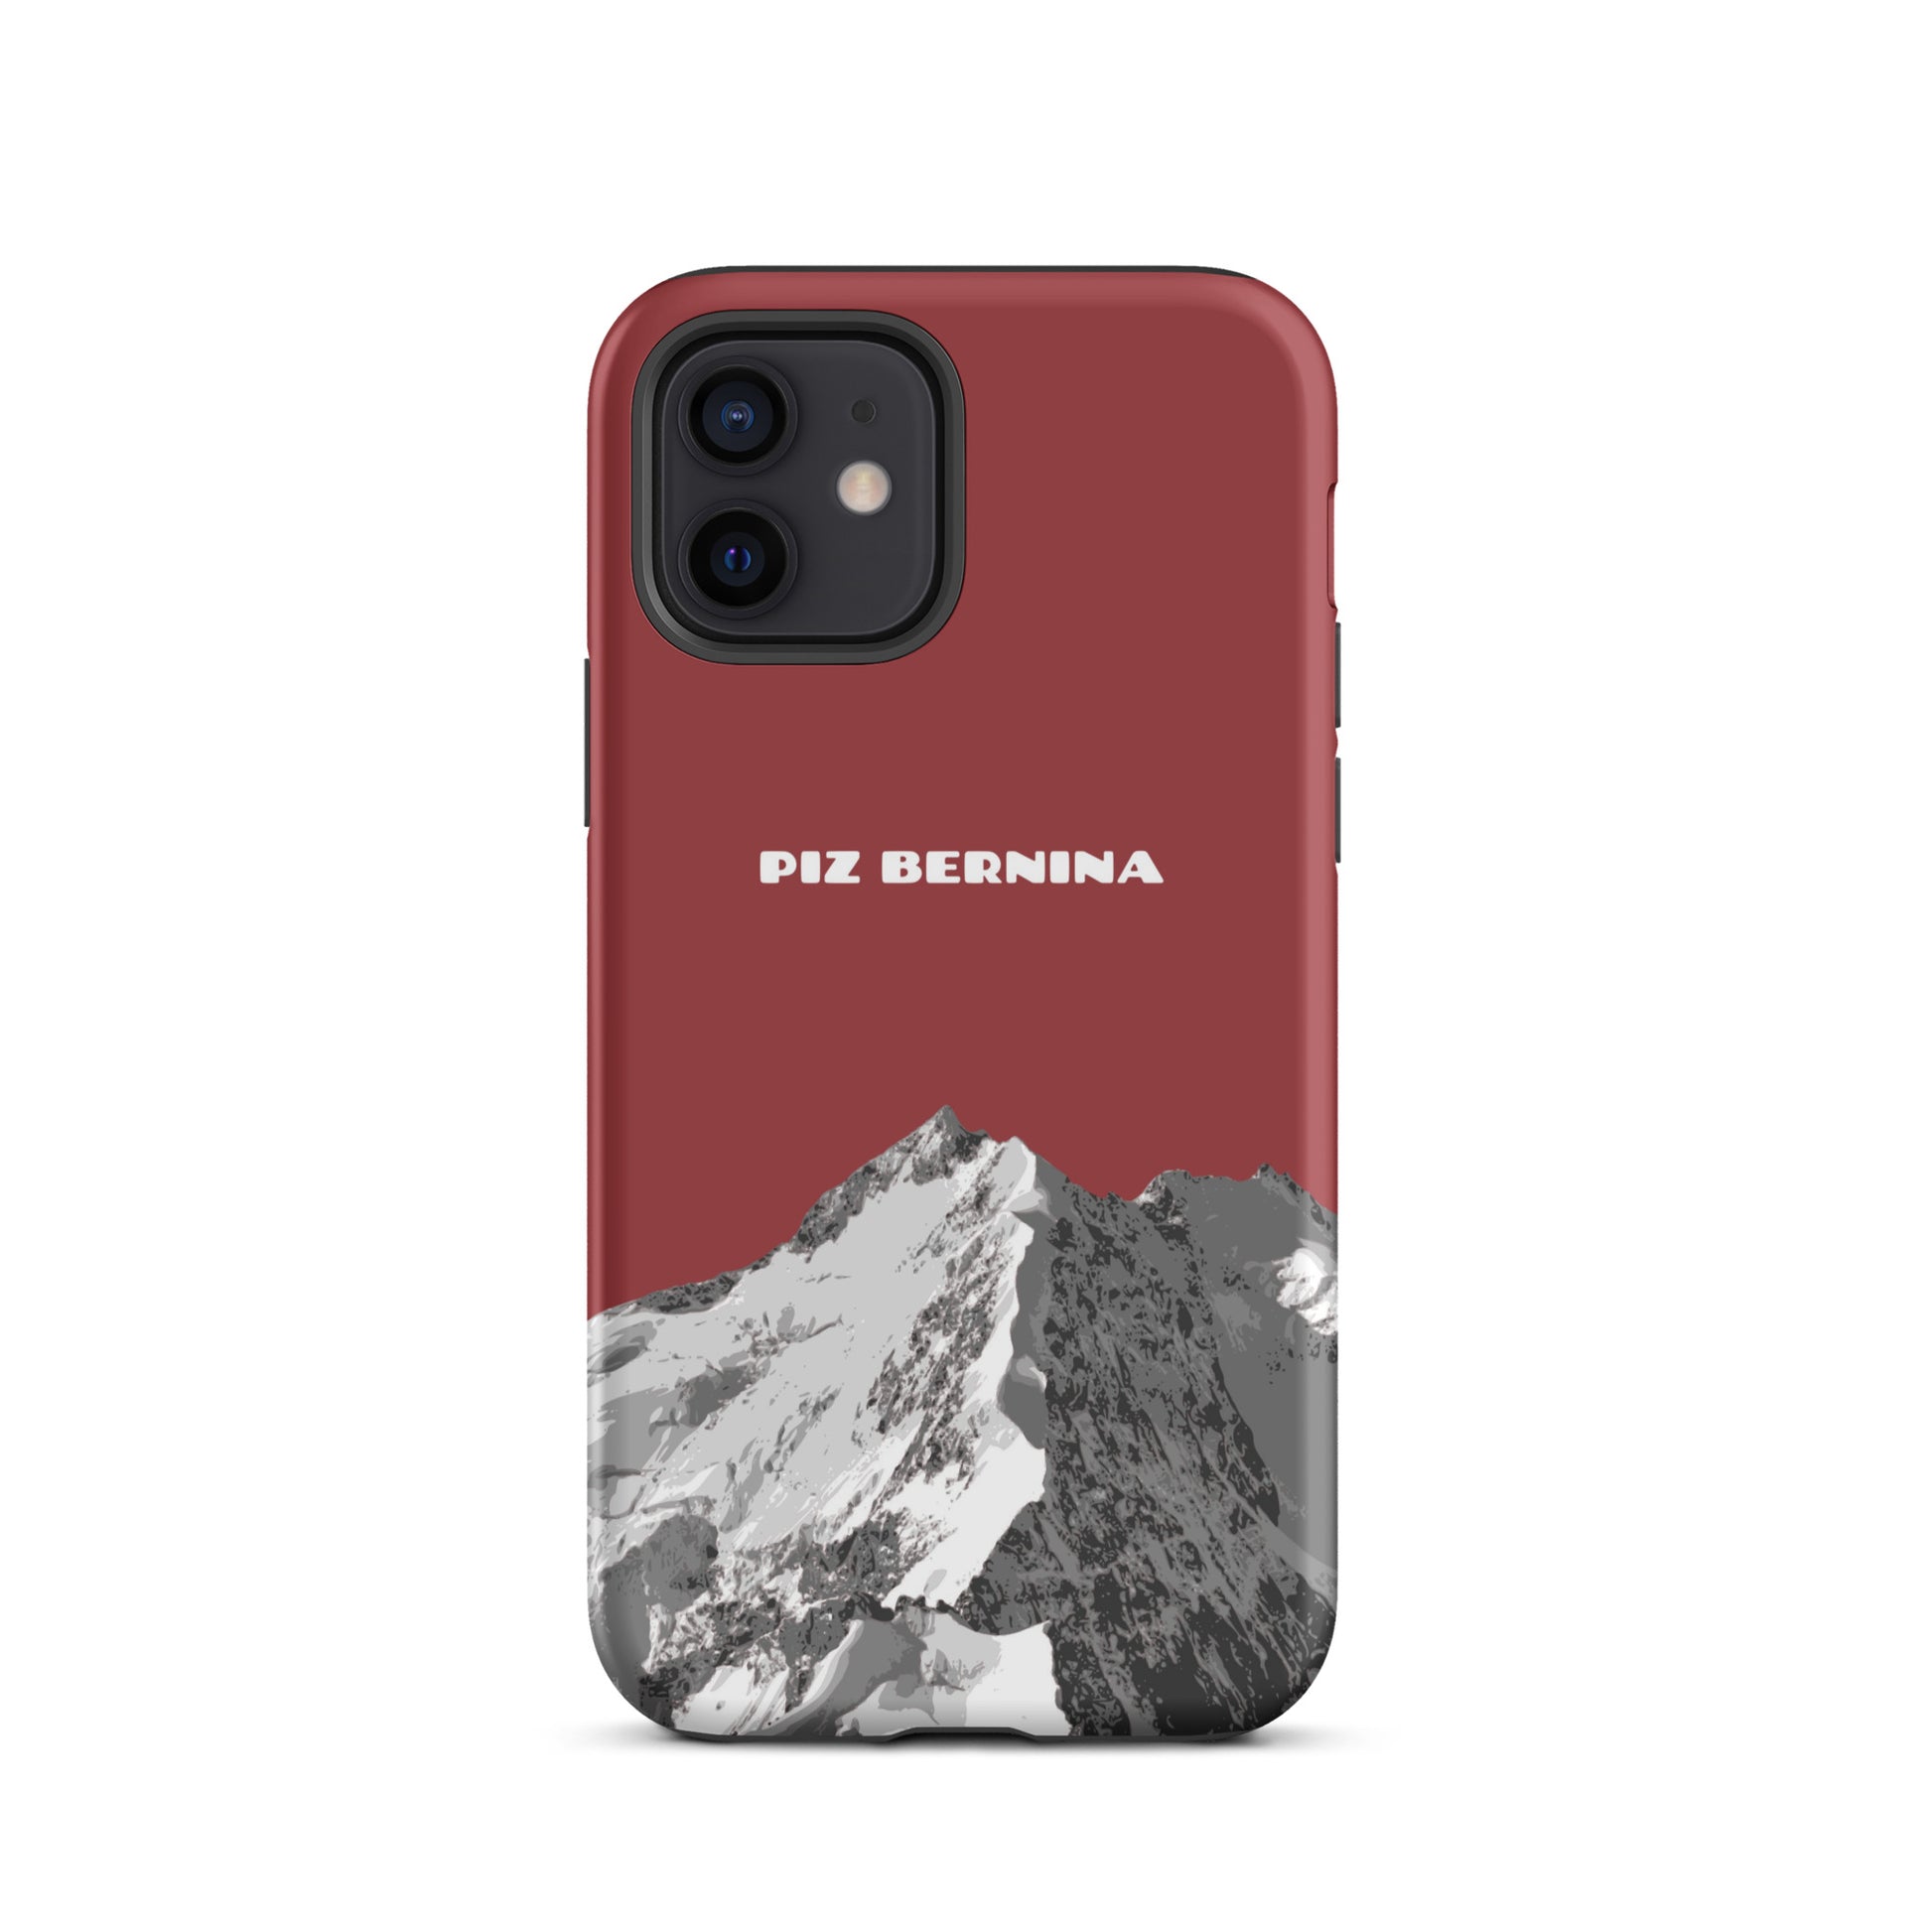 Hülle für das iPhone 12 von Apple in der Farbe Rot, dass den Piz Bernina in Graubünden zeigt.